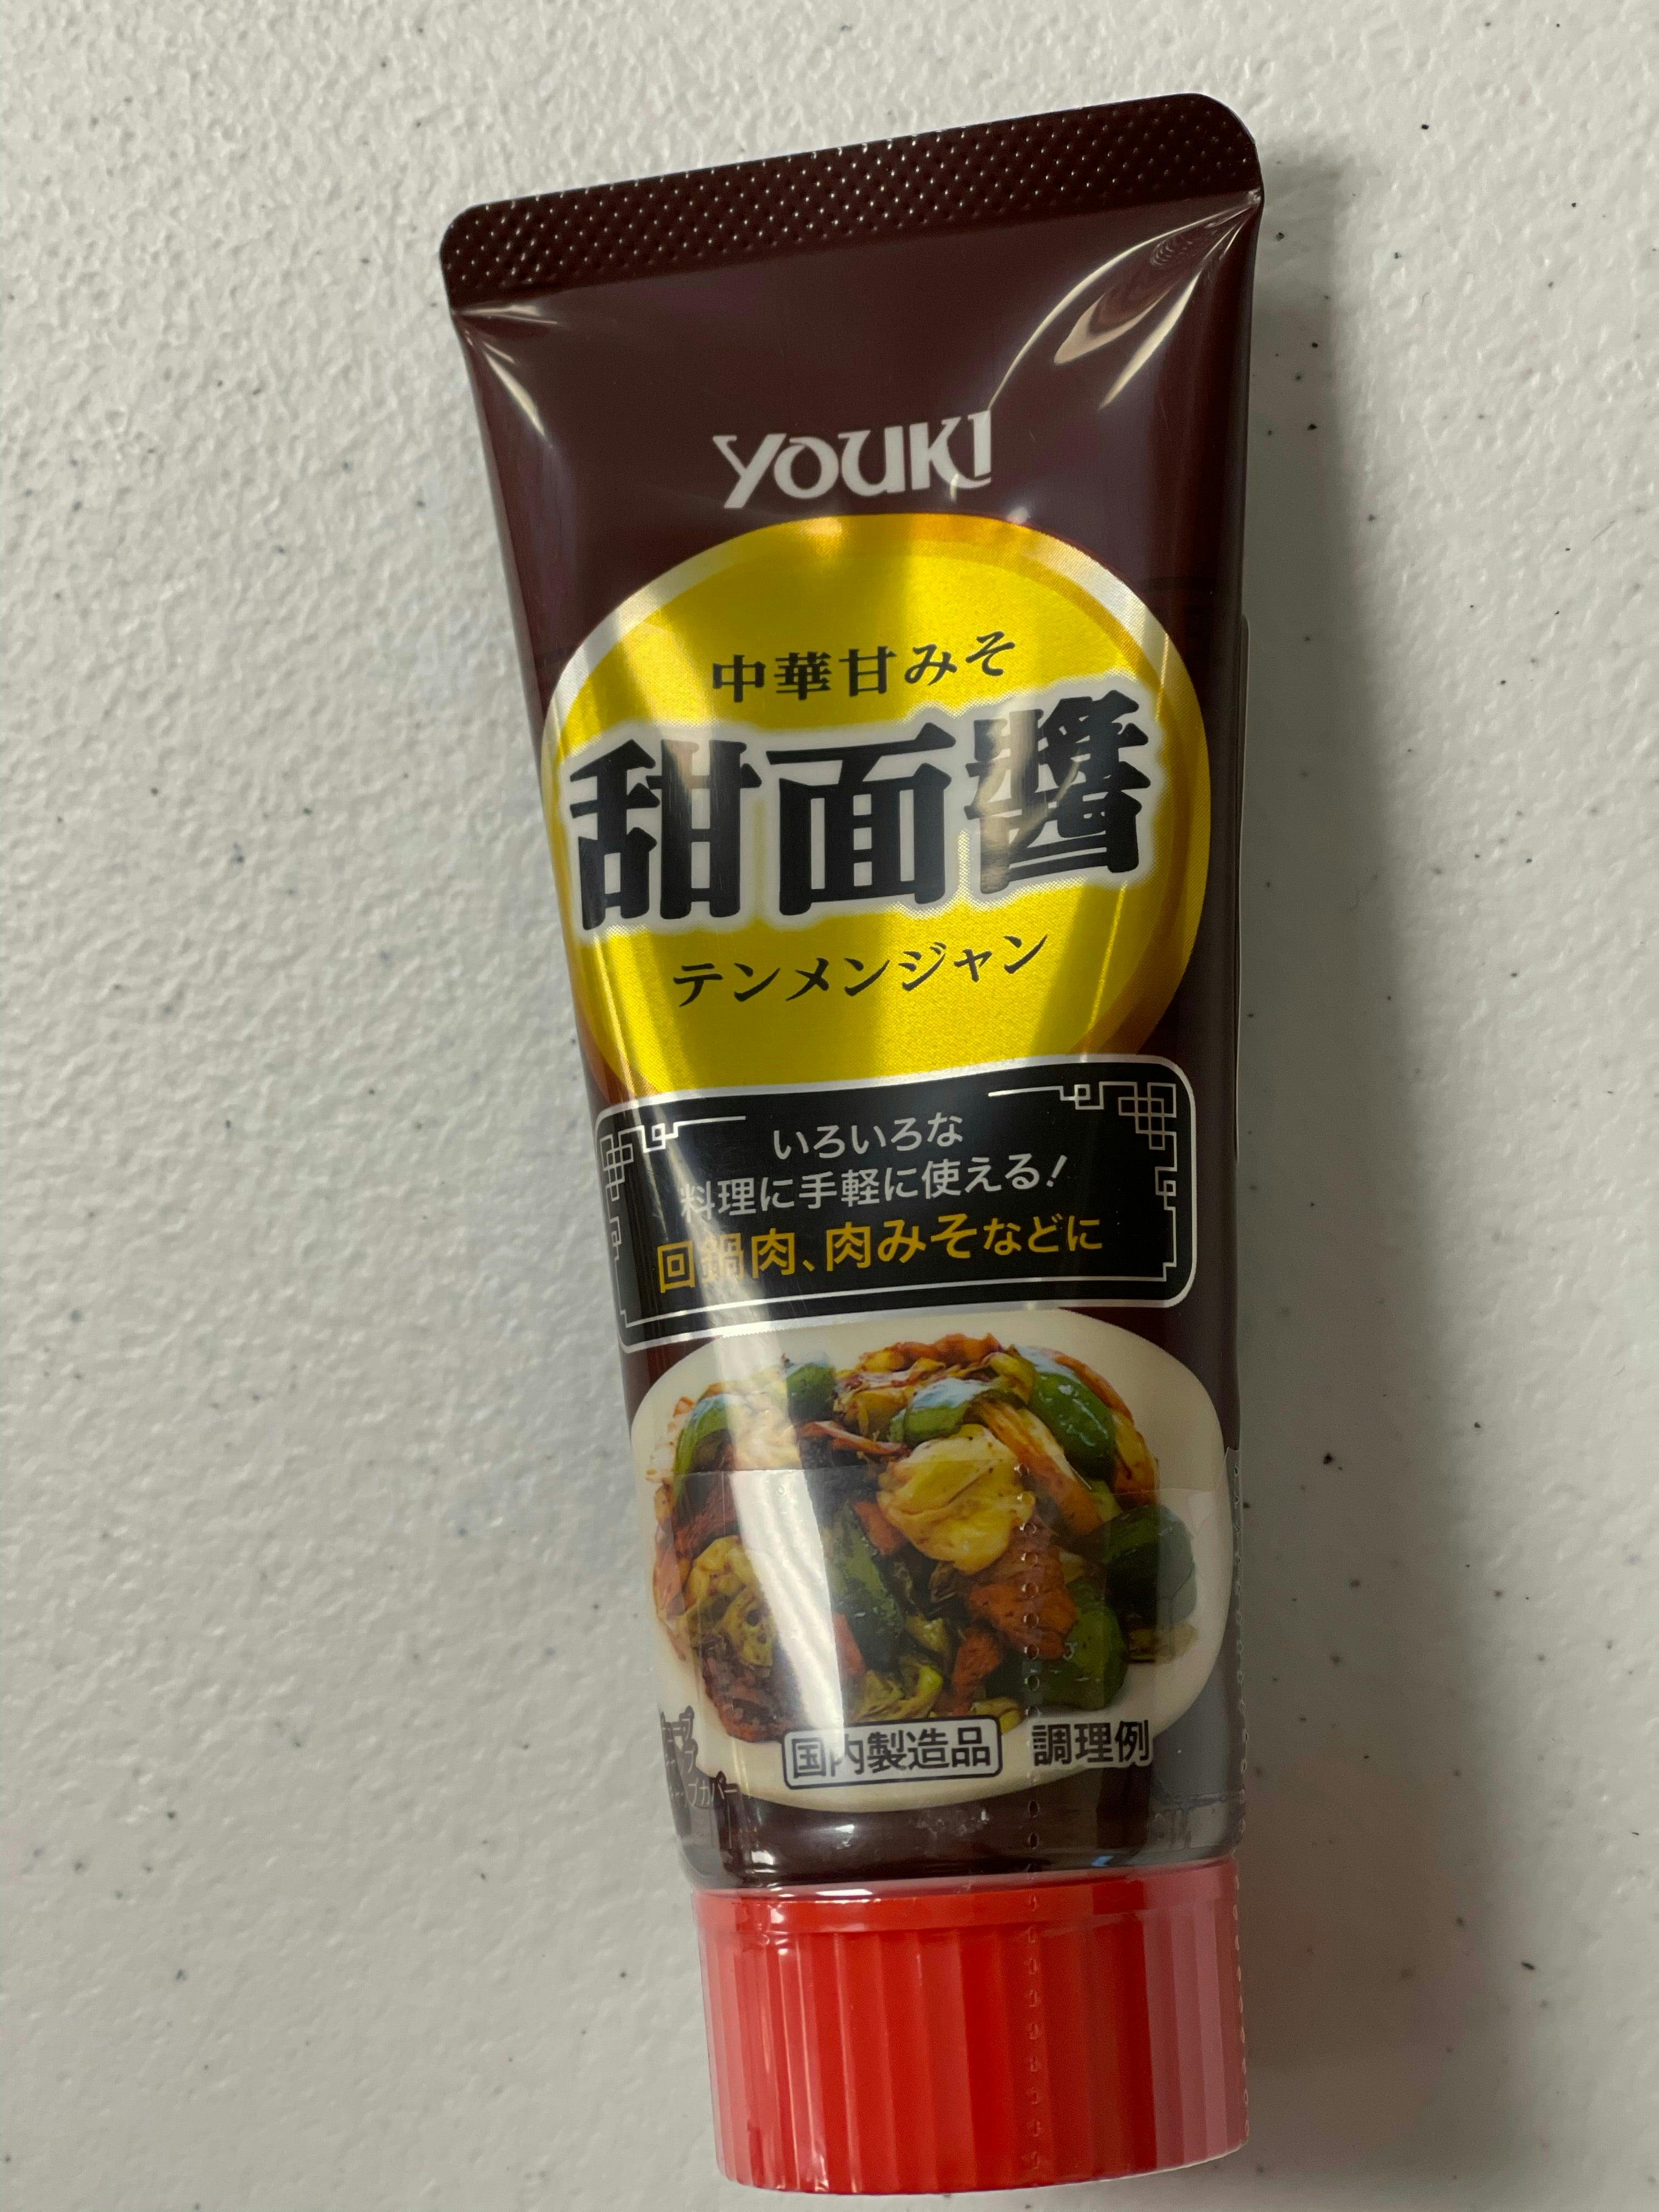 日本进口 Youki Tenmenjan Seasoning Paste ユウキ 甜面酱 100g